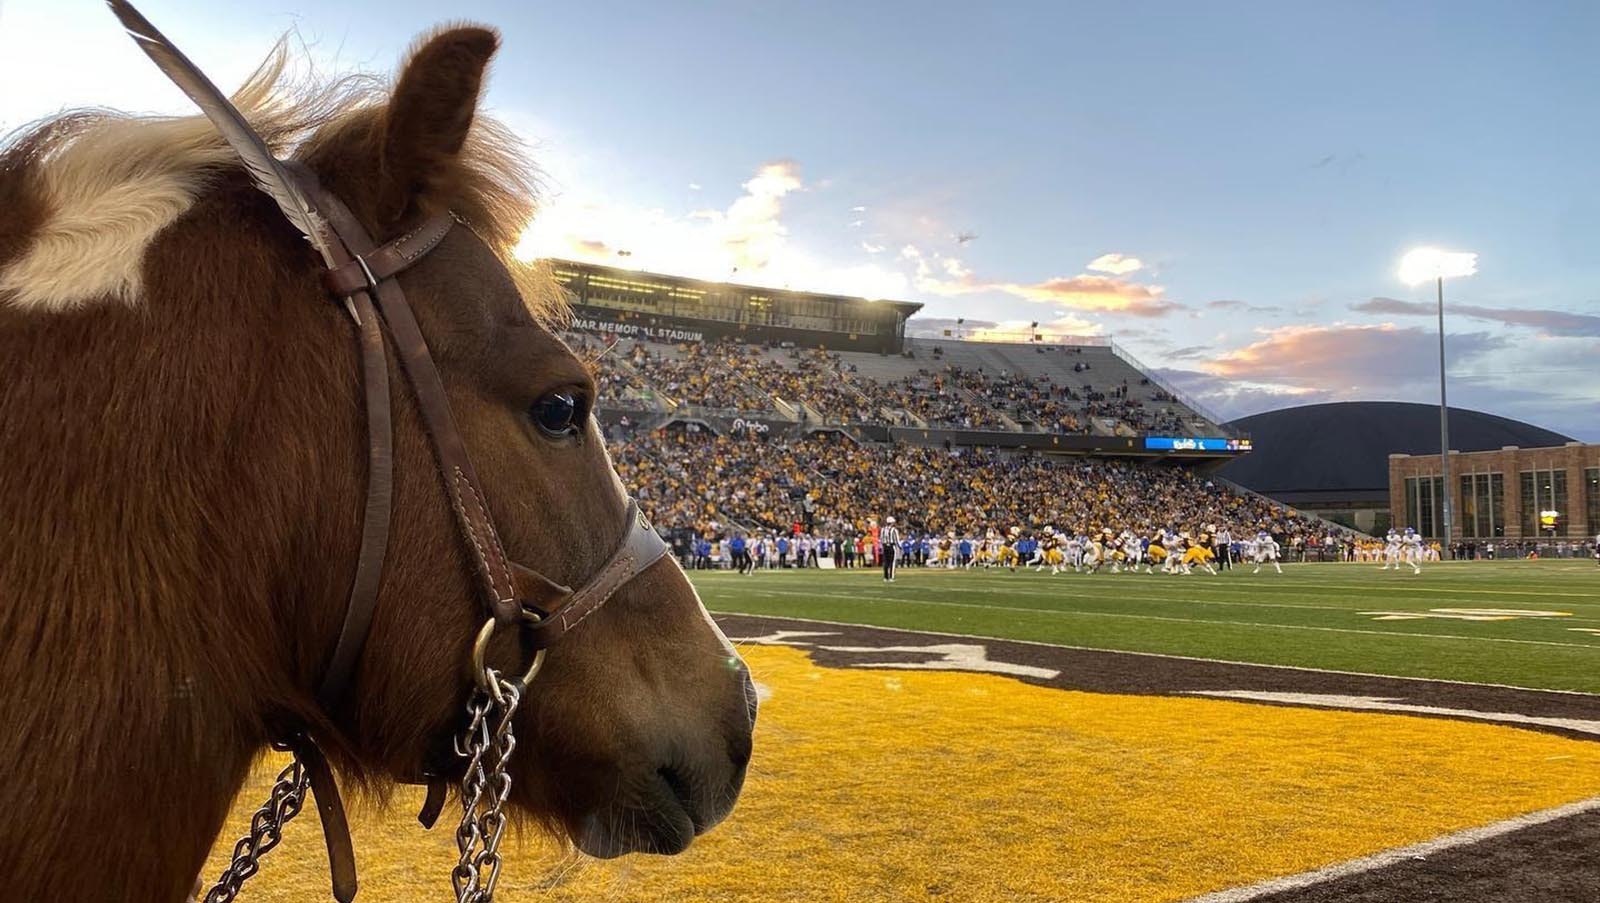 Cowboy Joe awaits his cue to run out at a football game in September 2022 at War Memorial Stadium.